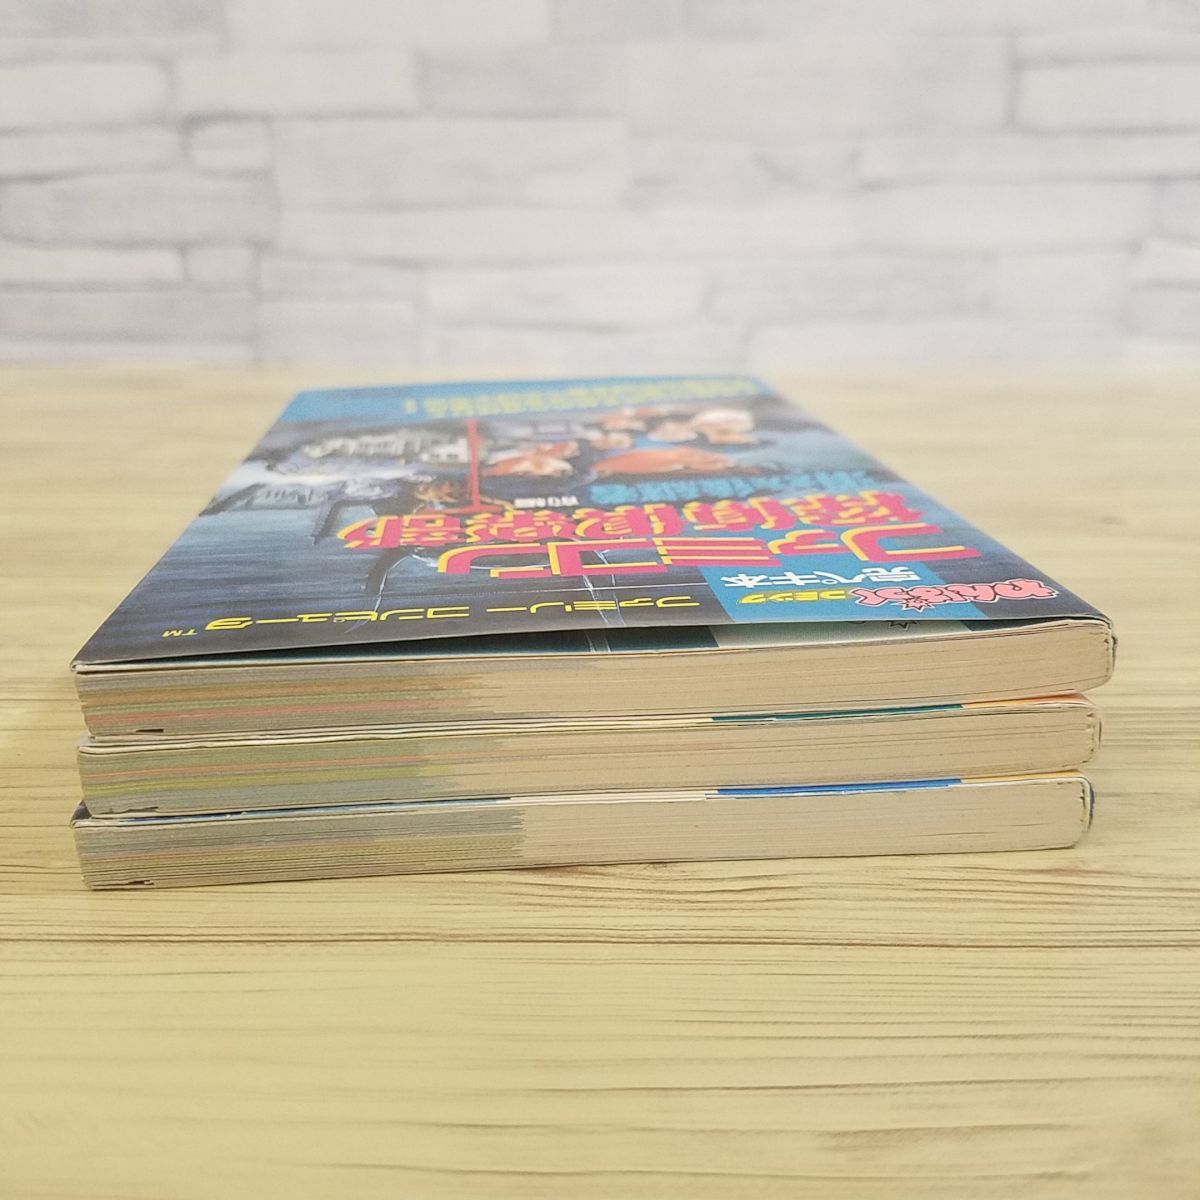  гид [..... комикс ...книга@ Famicom .. клуб исчезнувший пришедший на смену человек 3 шт. комплект ( передний сборник * после сборник *. раз . решение сборник )( перевод есть )] Famicom 